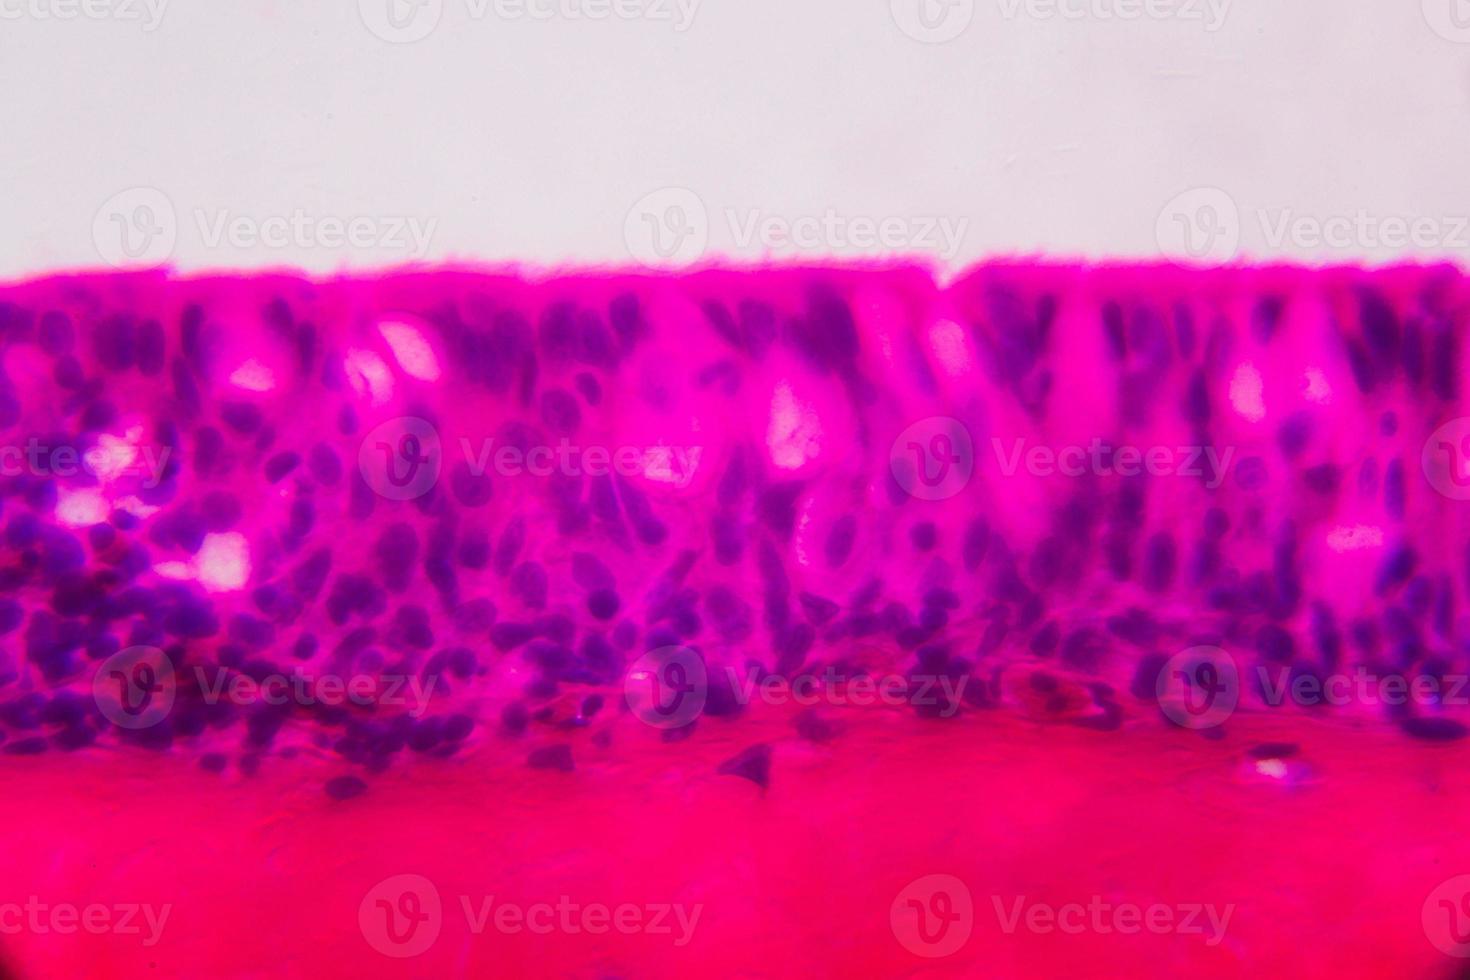 anodonta branchie epitelio ciliato al microscopio - colore rosa e viola astratto su sfondo bianco foto